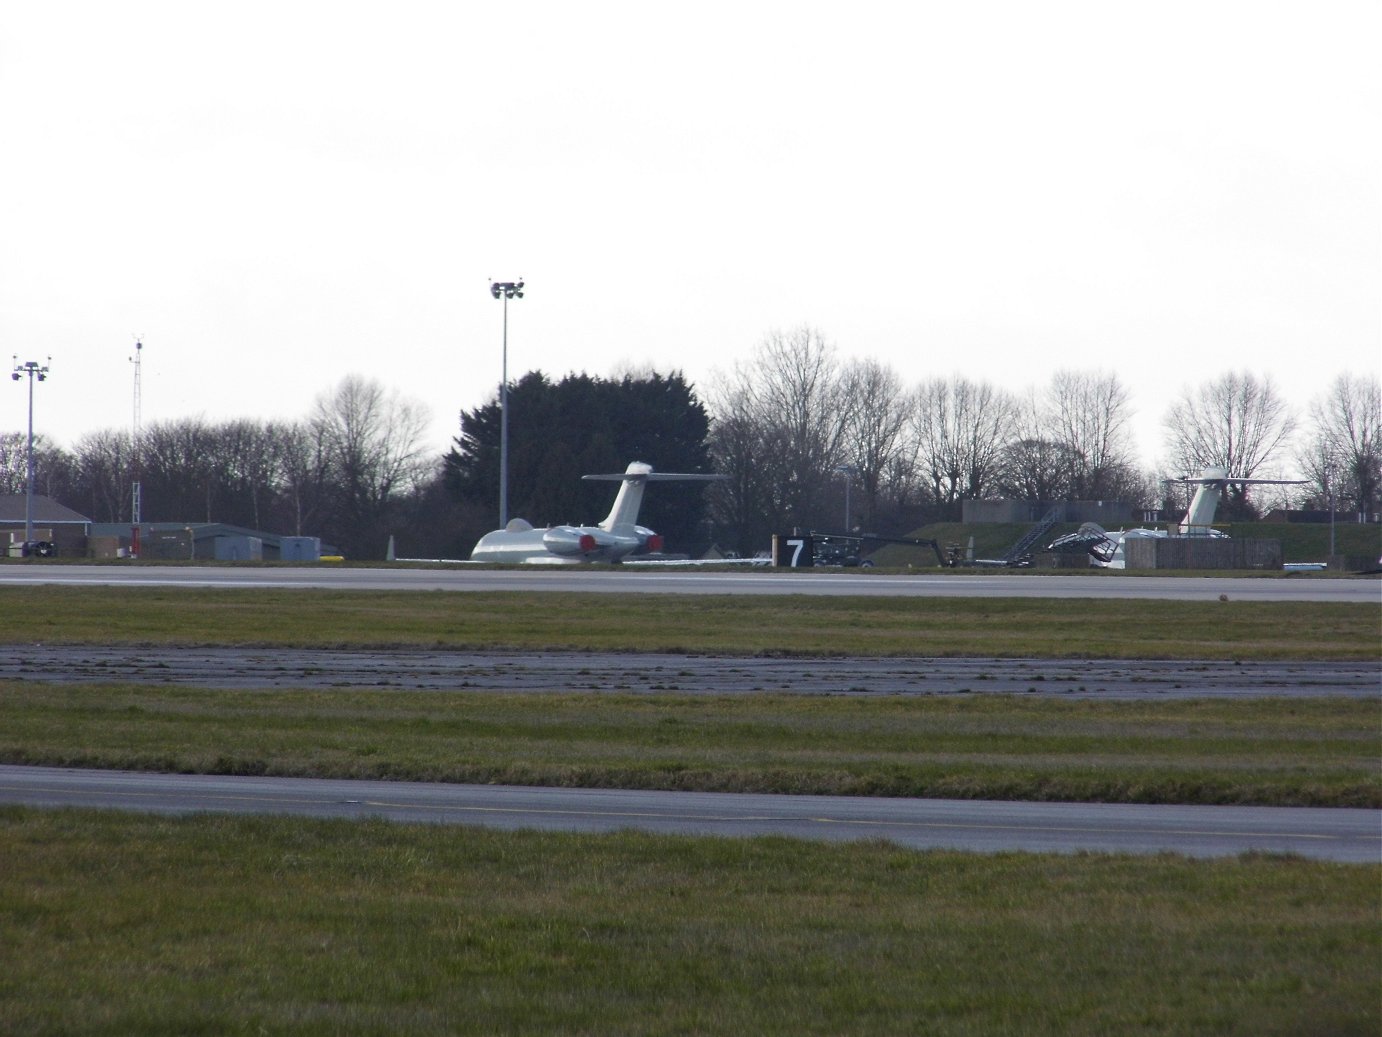 RAF Bombardier Sentinel, RAF Waddington February 19th 2019.